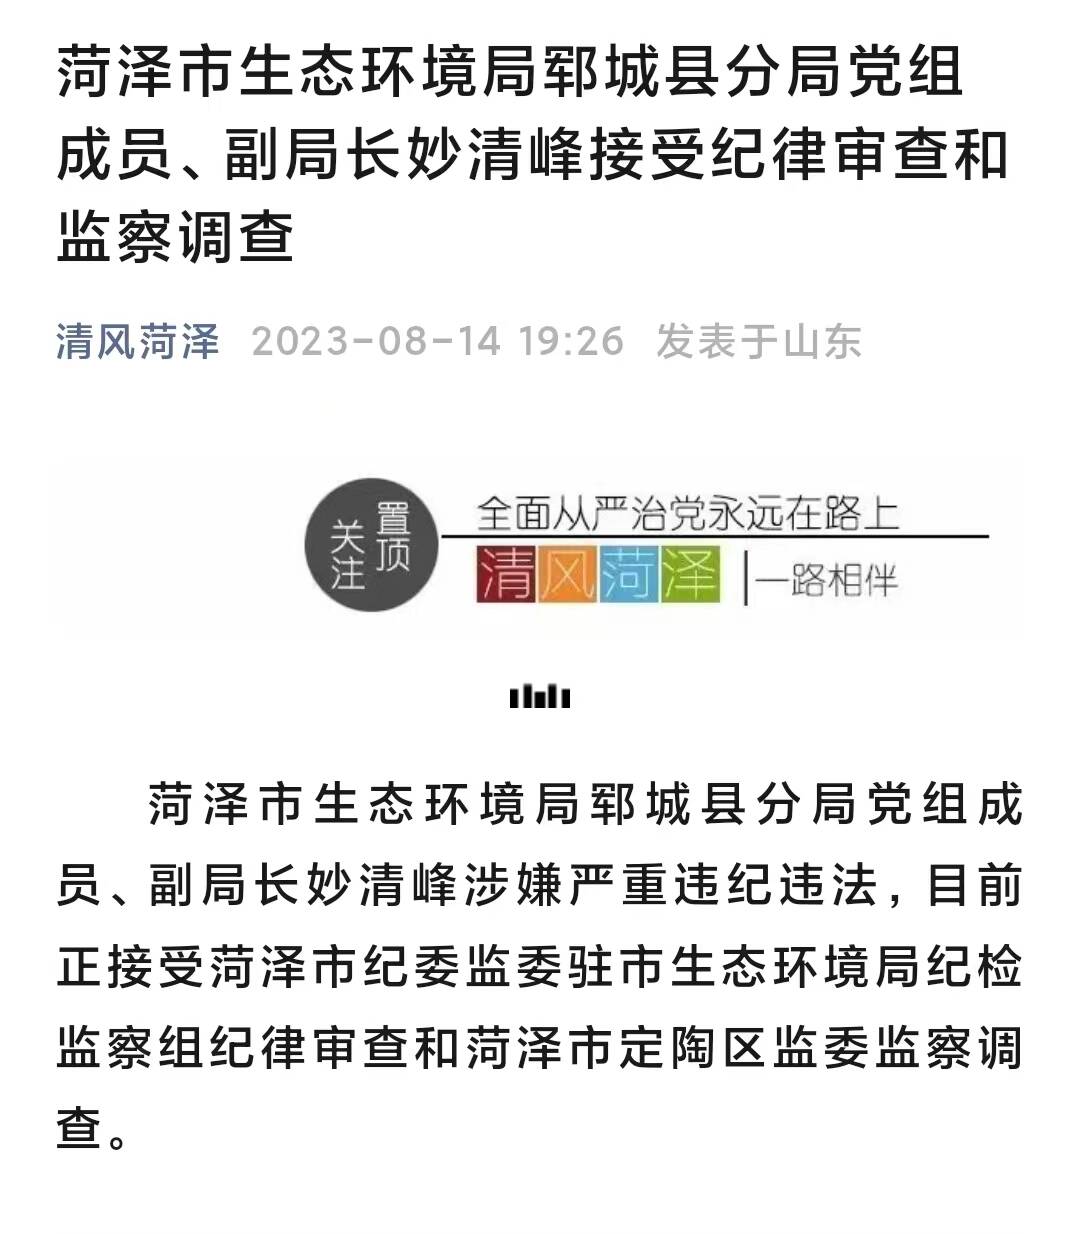 菏泽市生态环境局郓城县分局党组成员、副局长妙清峰接受纪律审查和监察调查